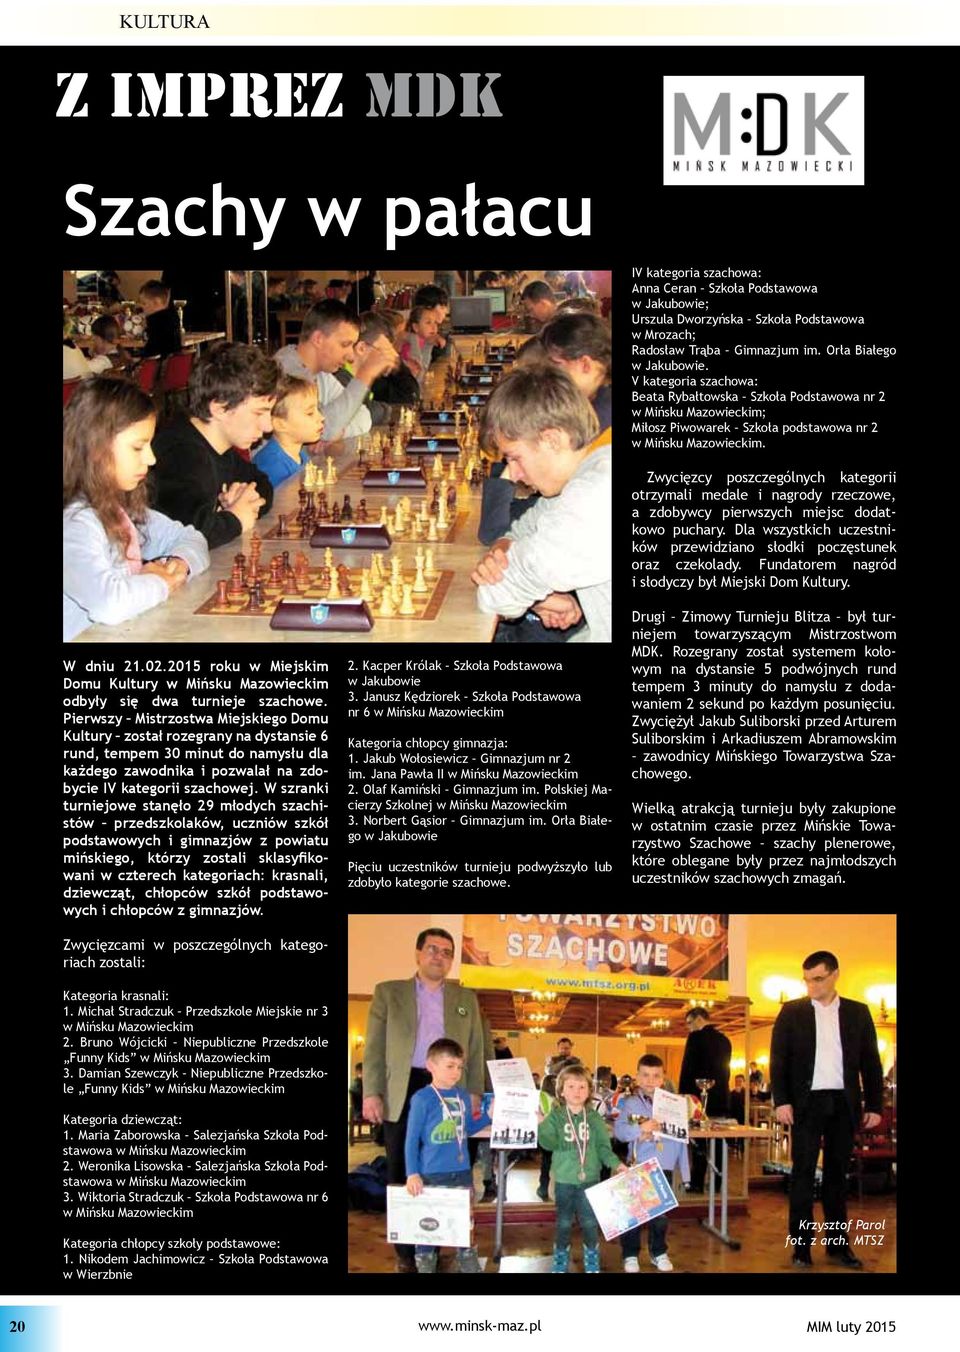 W szranki turniejowe stanęło 29 młodych szachistów przedszkolaków, uczniów szkół podstawowych i gimnazjów z powiatu mińskiego, którzy zostali sklasyfikowani w czterech kategoriach: krasnali,